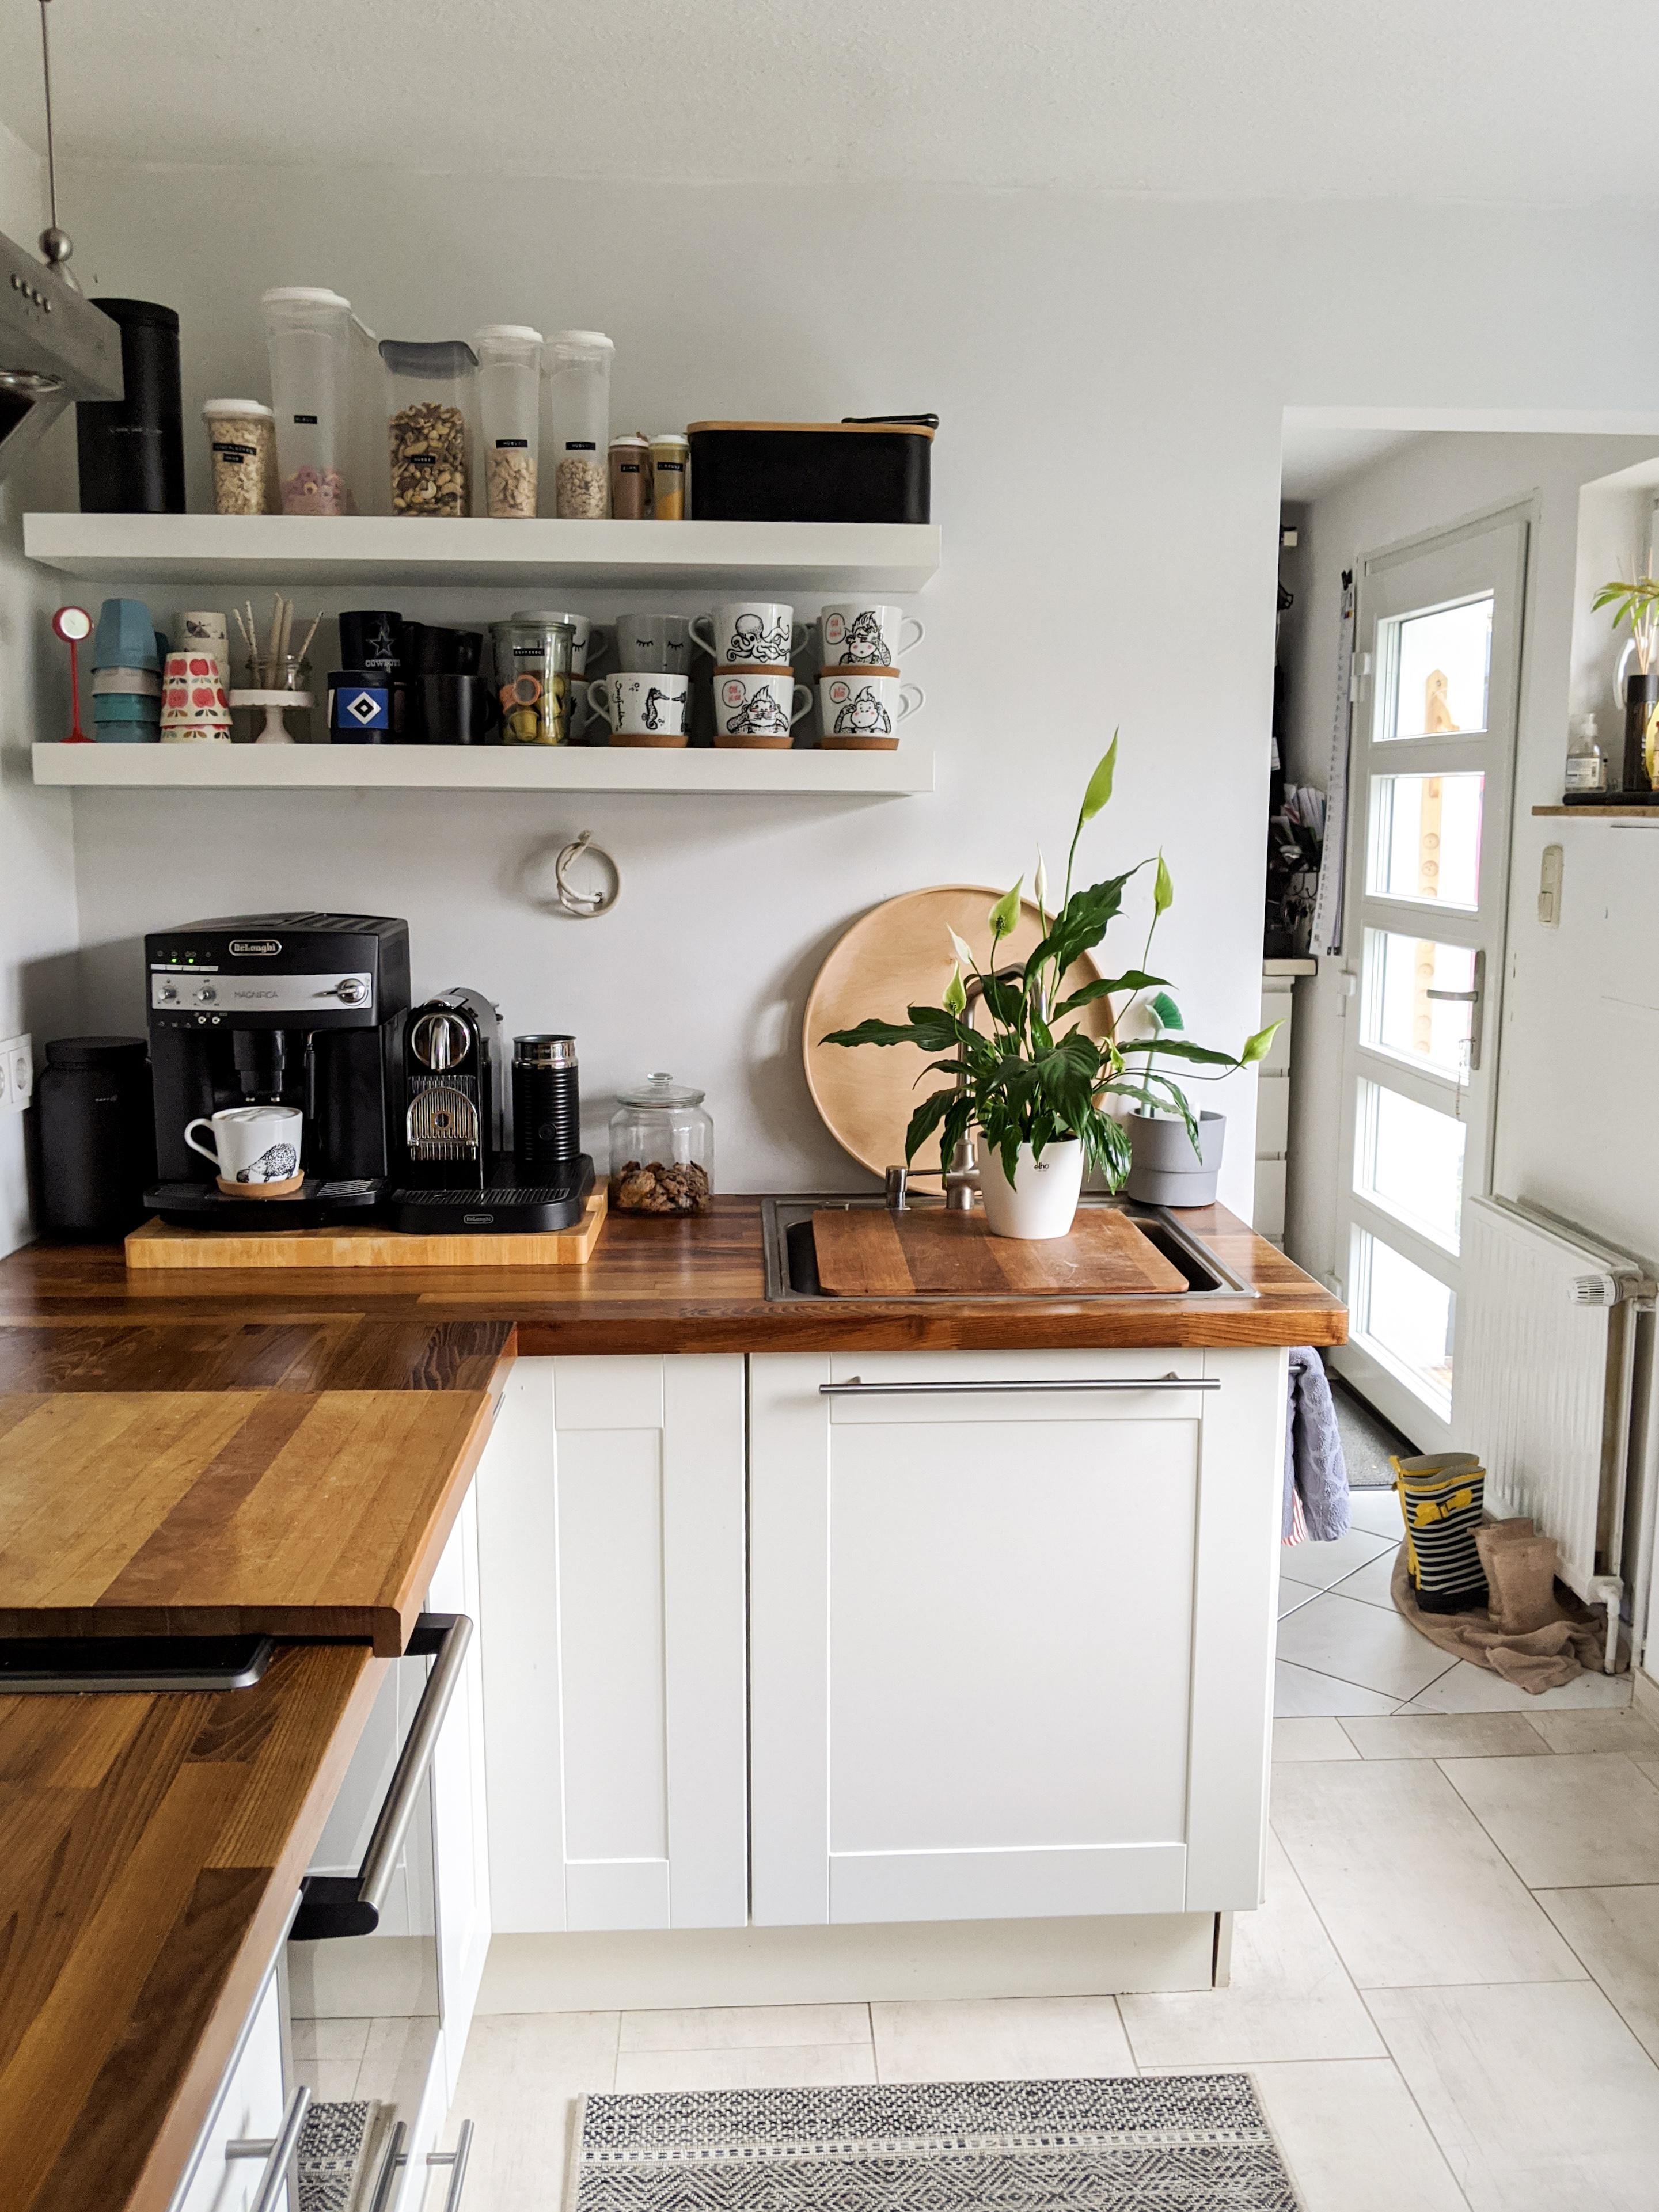 Unsere Küche mit den selbstbemalten Tassen,... Die Renovierung hat sich so gelohnt

#küche 
#renovieren 
#kaffeeliebe 